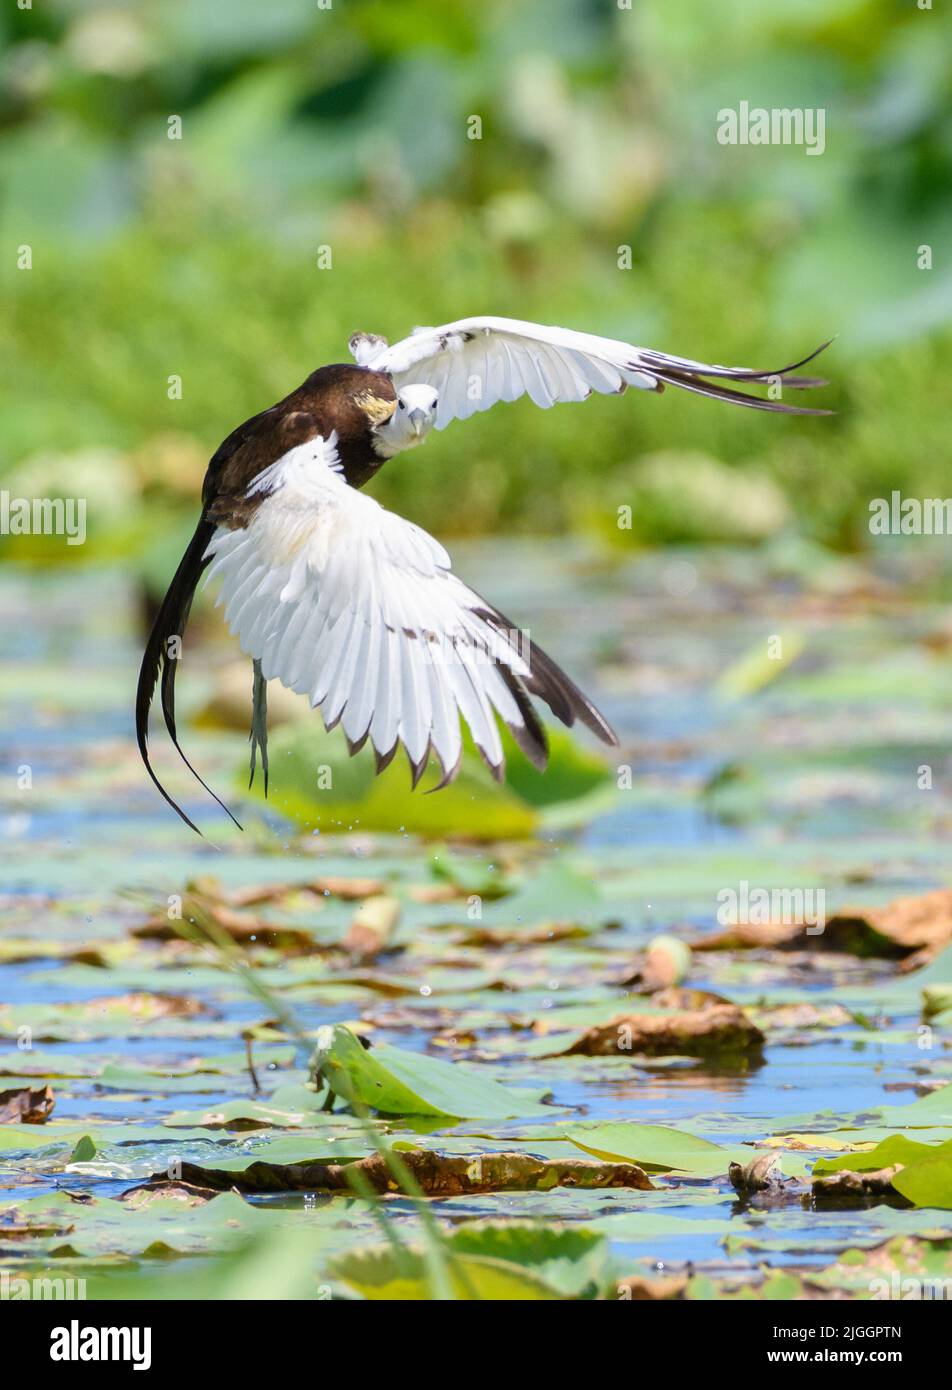 Eine wunderschöne Jacana-Vogellandungsaufnahme mit Pheasant-Schwanz dreht sich um und schaut direkt auf die Kamera. Landung auf der Vegetation im See. Stockfoto